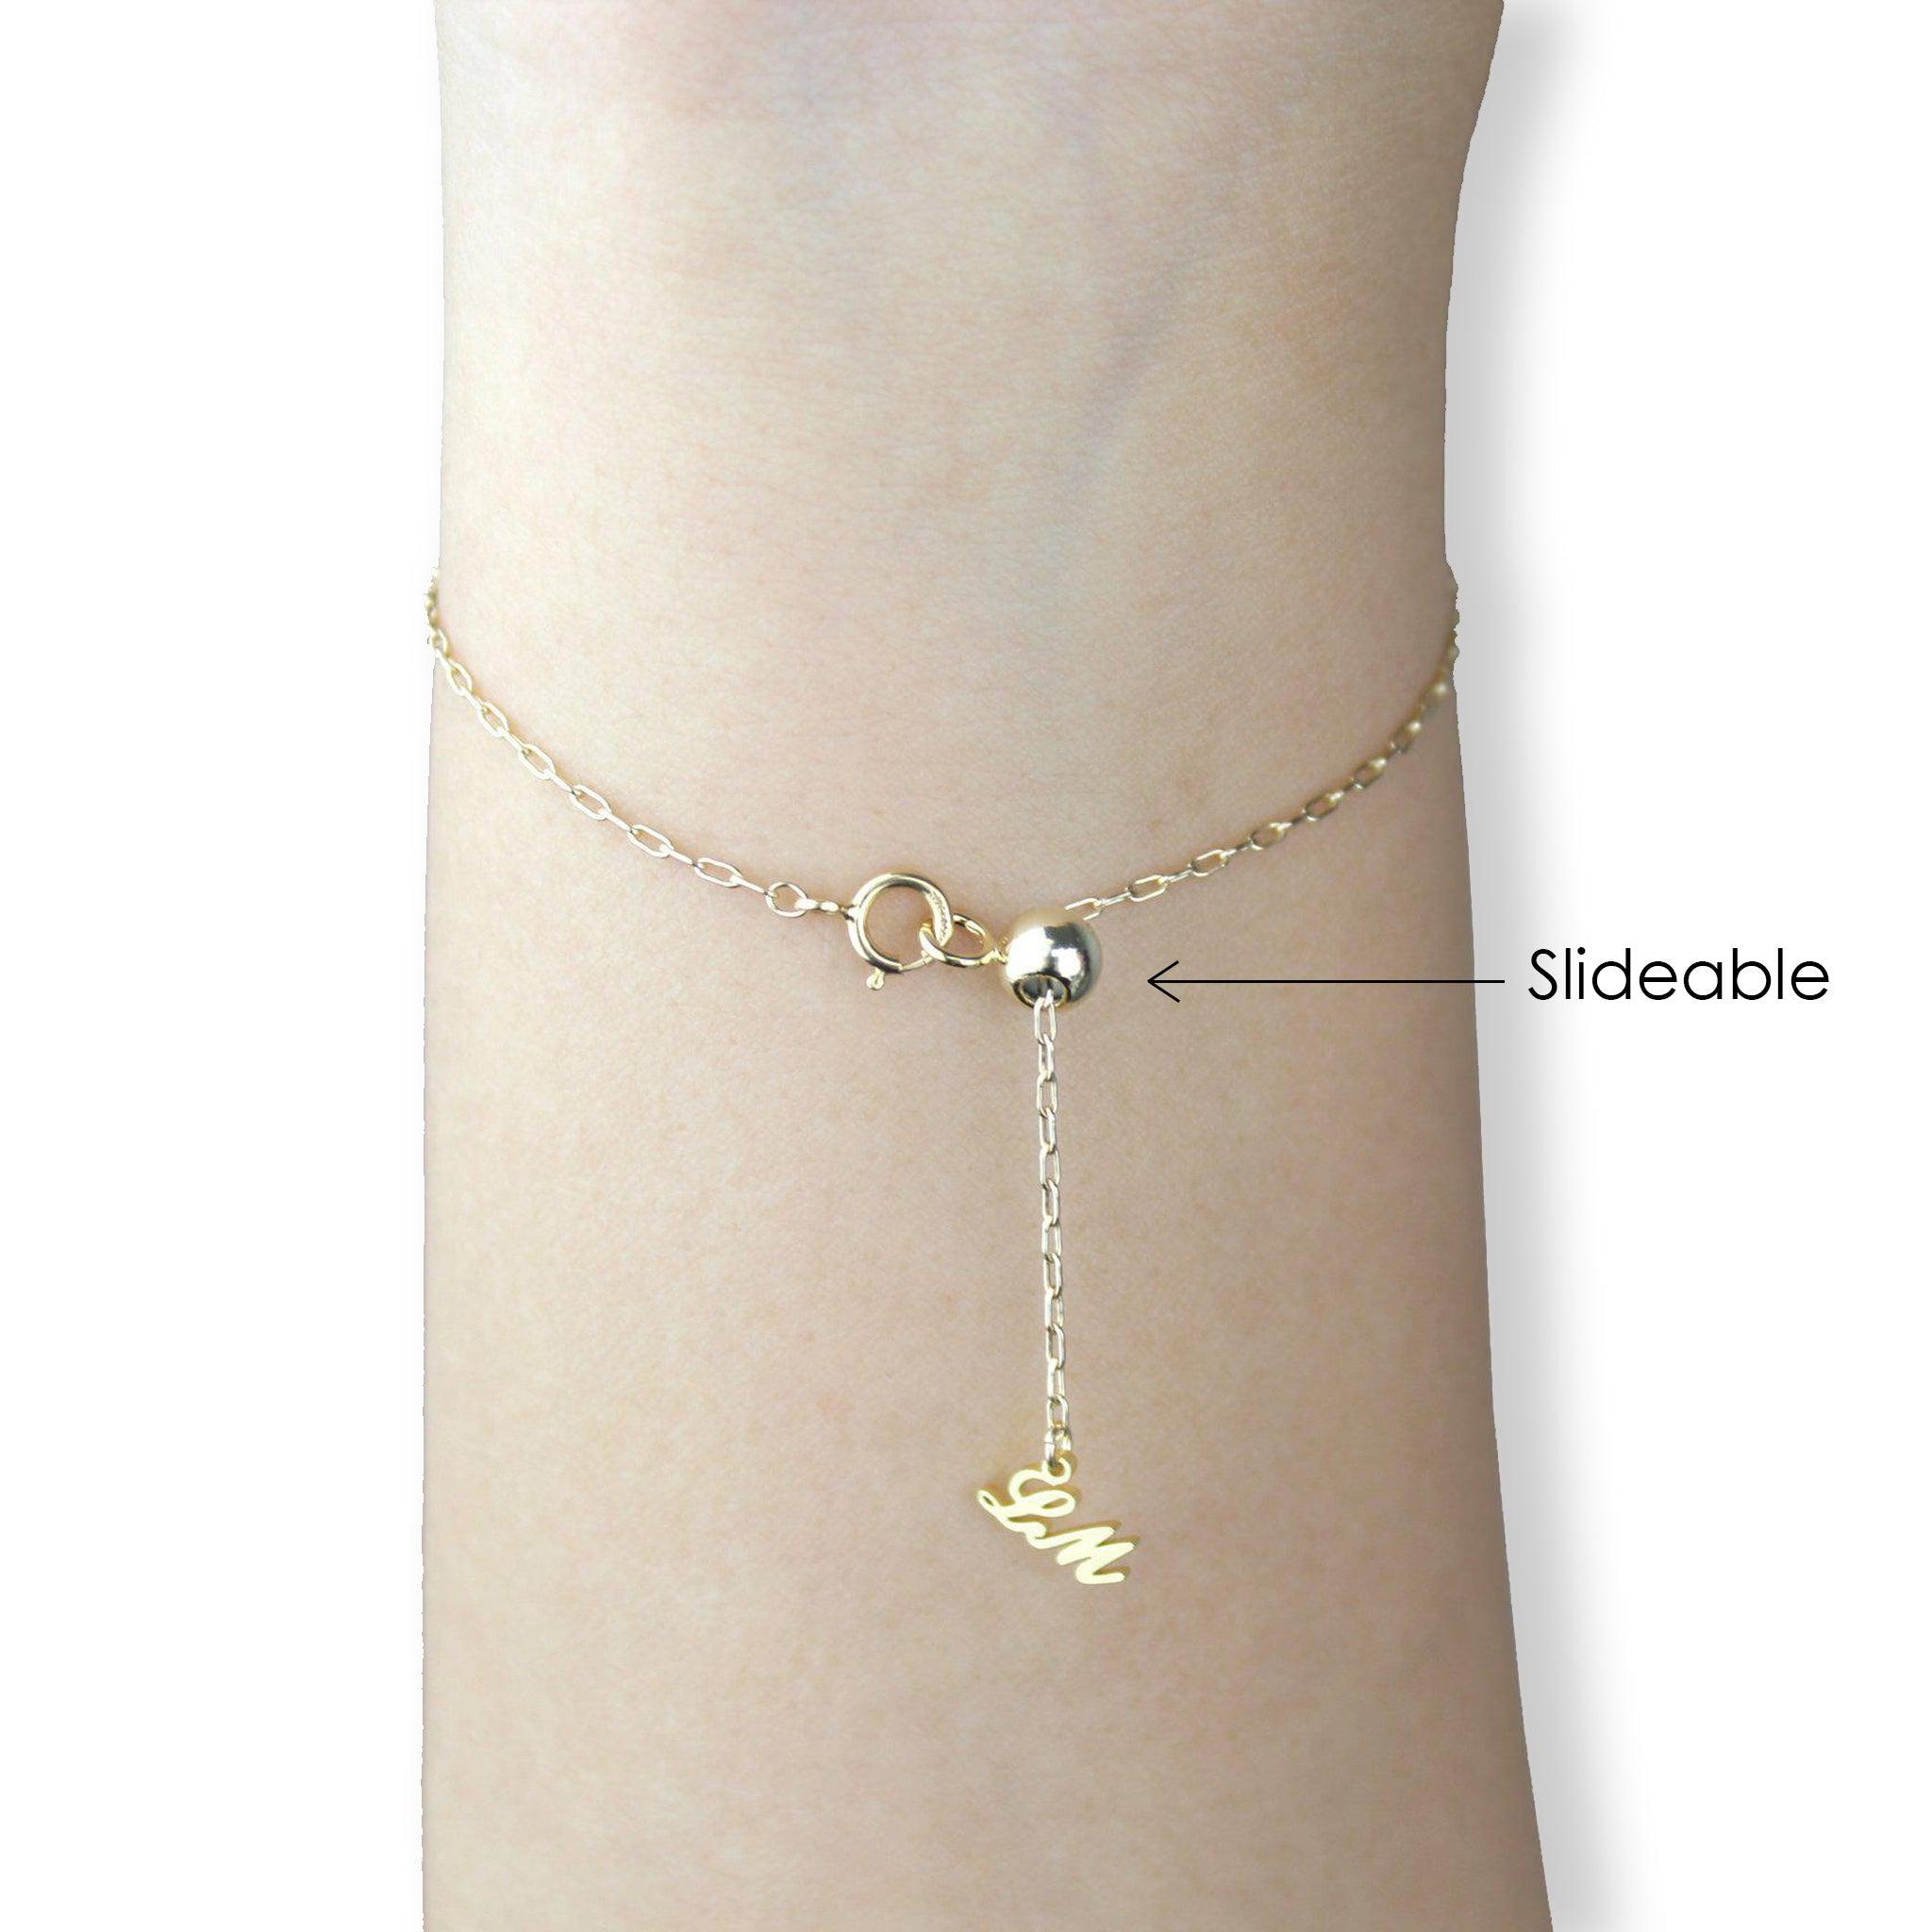 [Constellation] Sagittarius Necklace